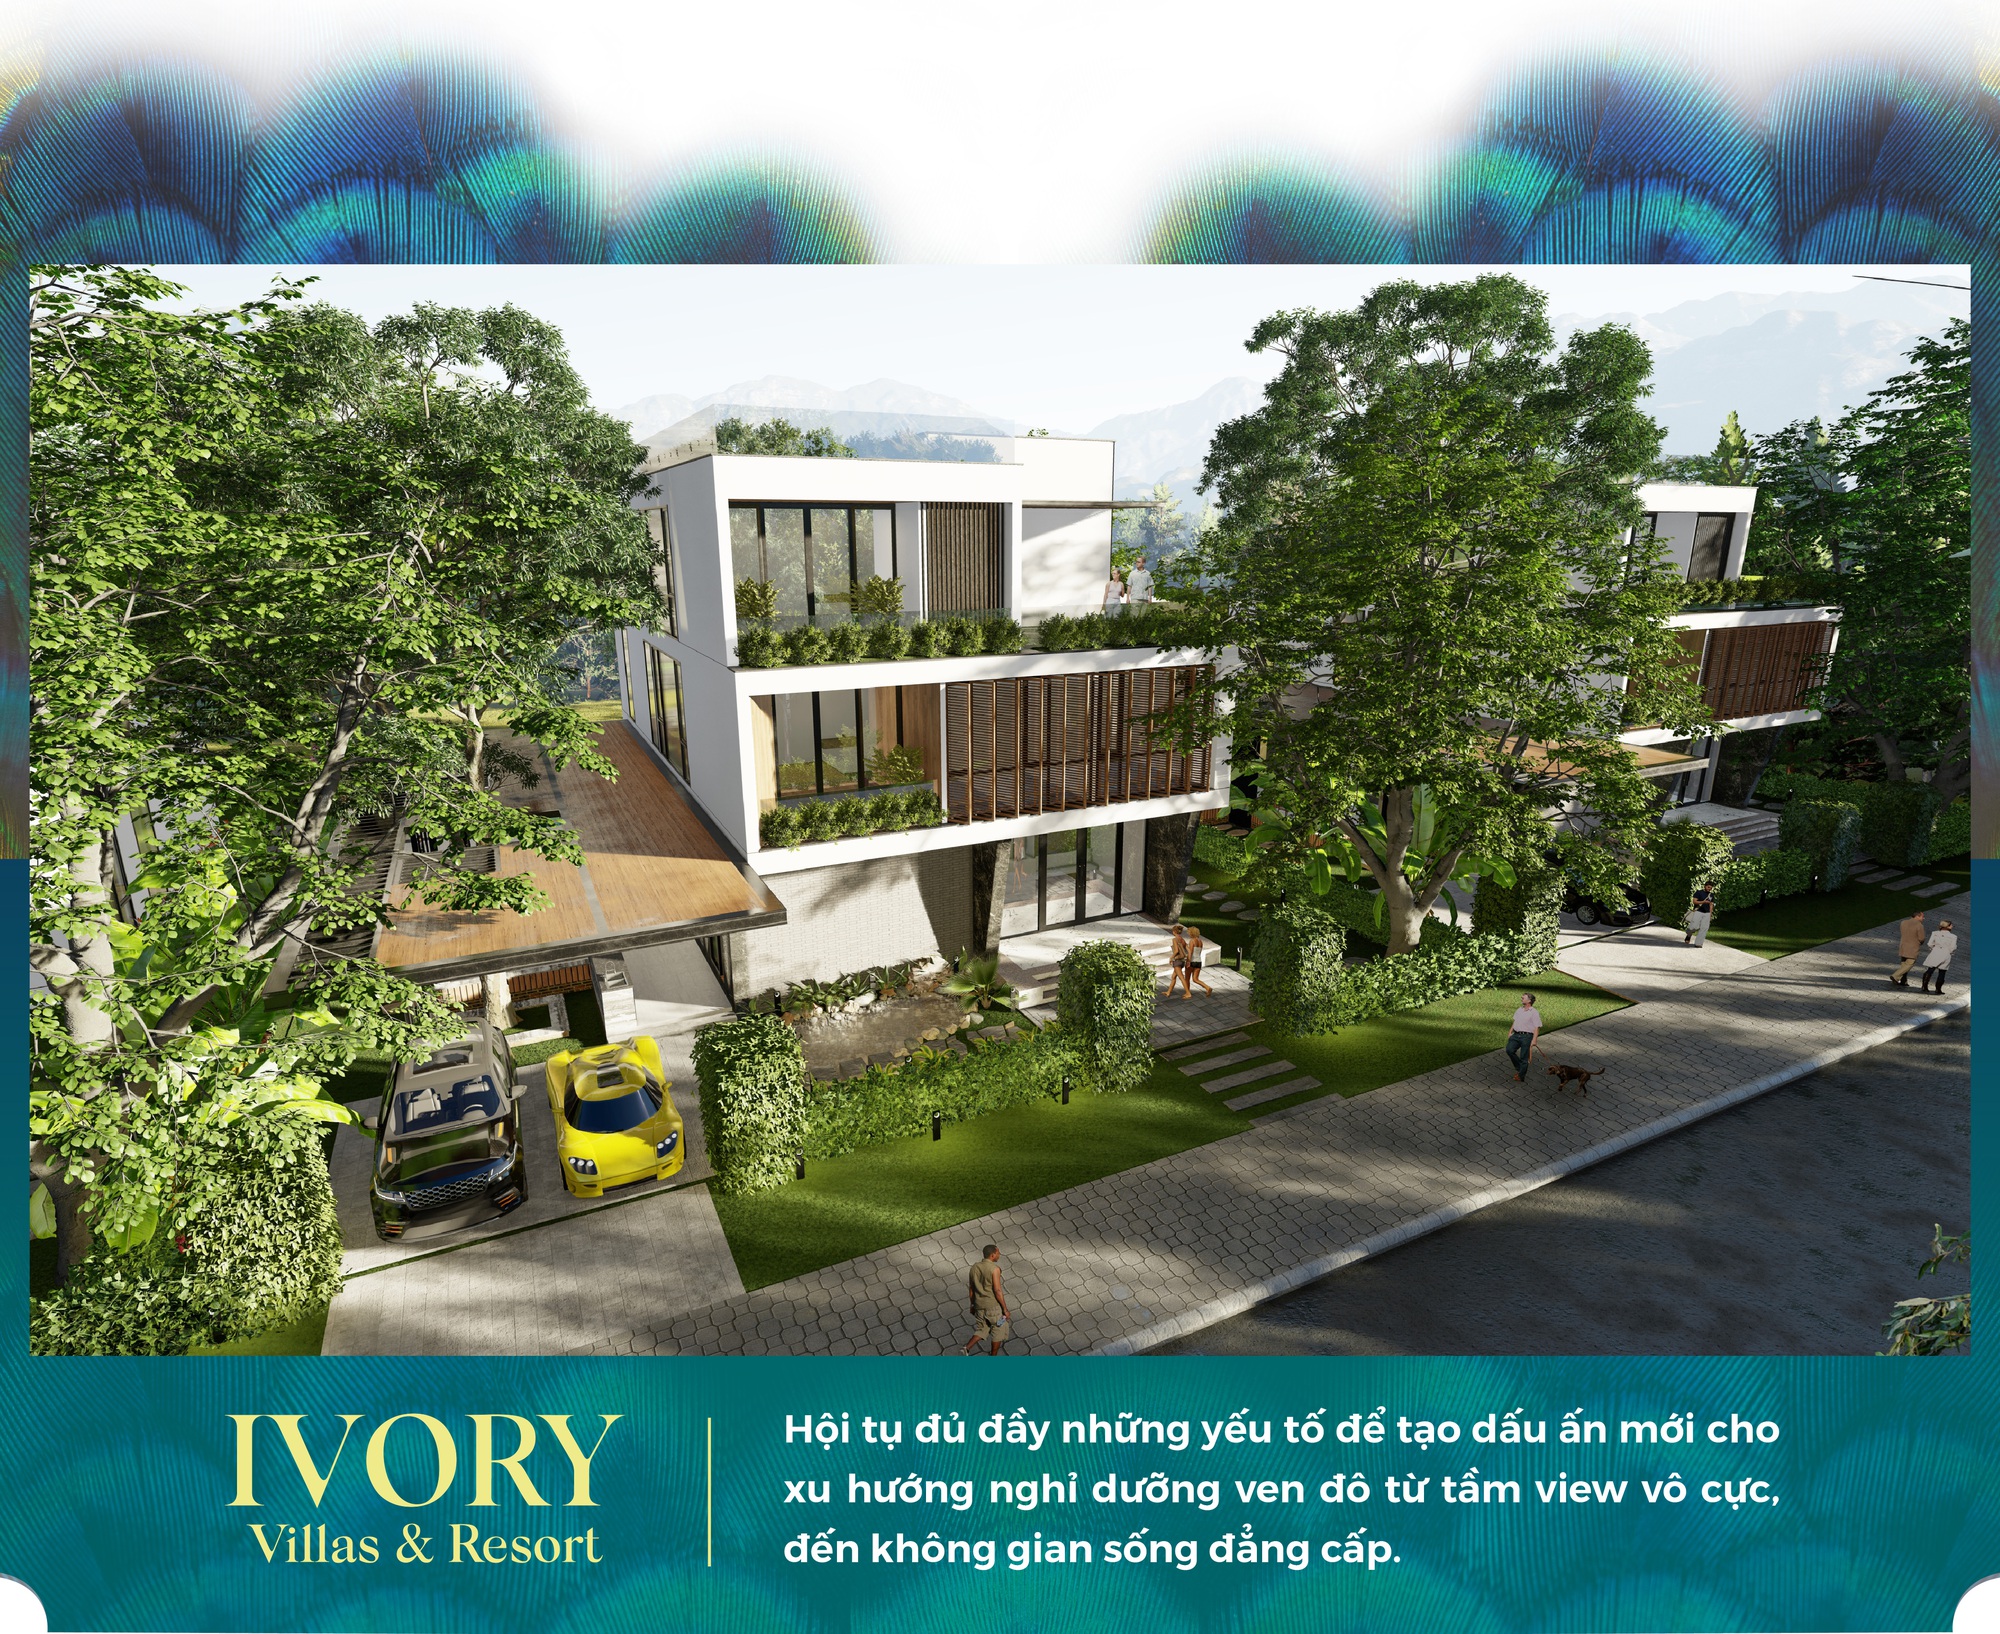 Ivory Villas & Resort: Bất động sản xu hướng nghỉ dưỡng ven đô 3